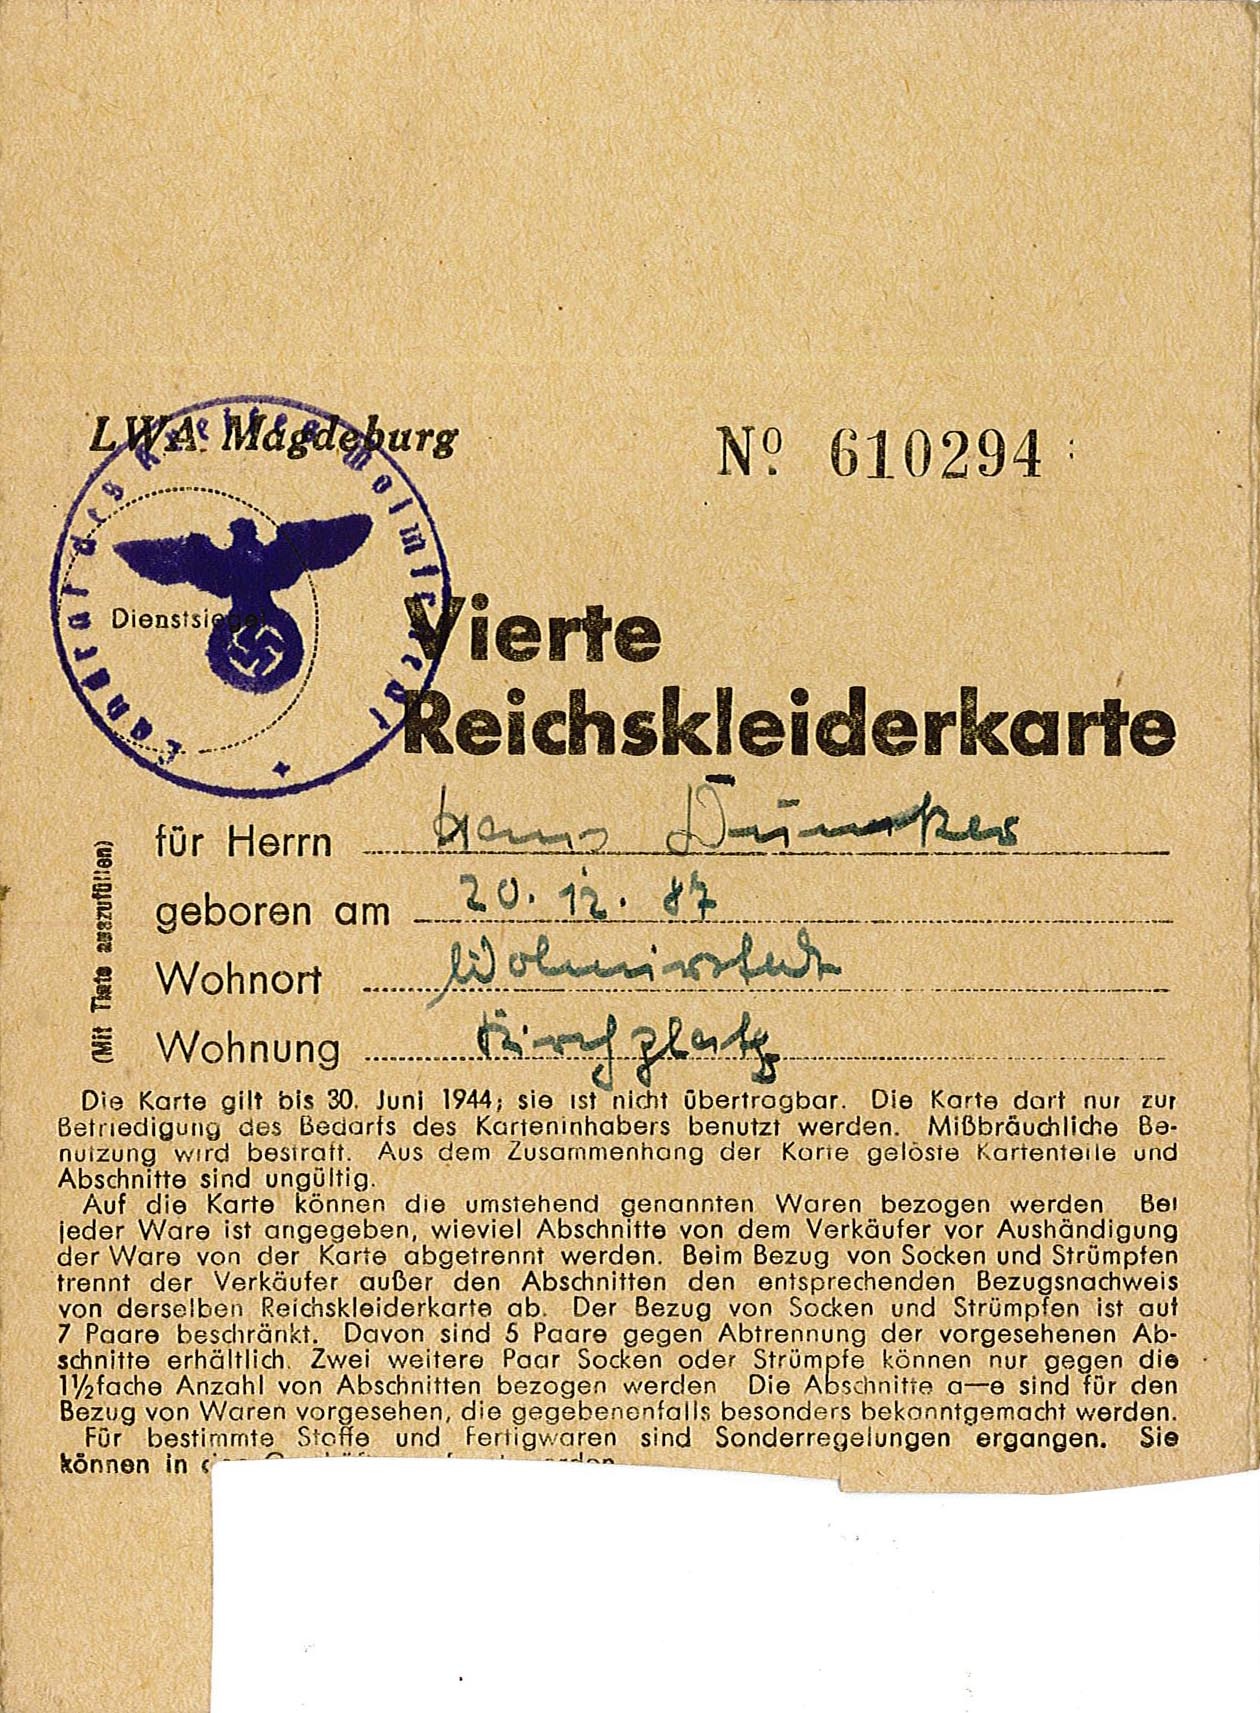 Vierte Reichskleiderkarte für Hans Dunker, 1944 (Museum Wolmirstedt RR-F)